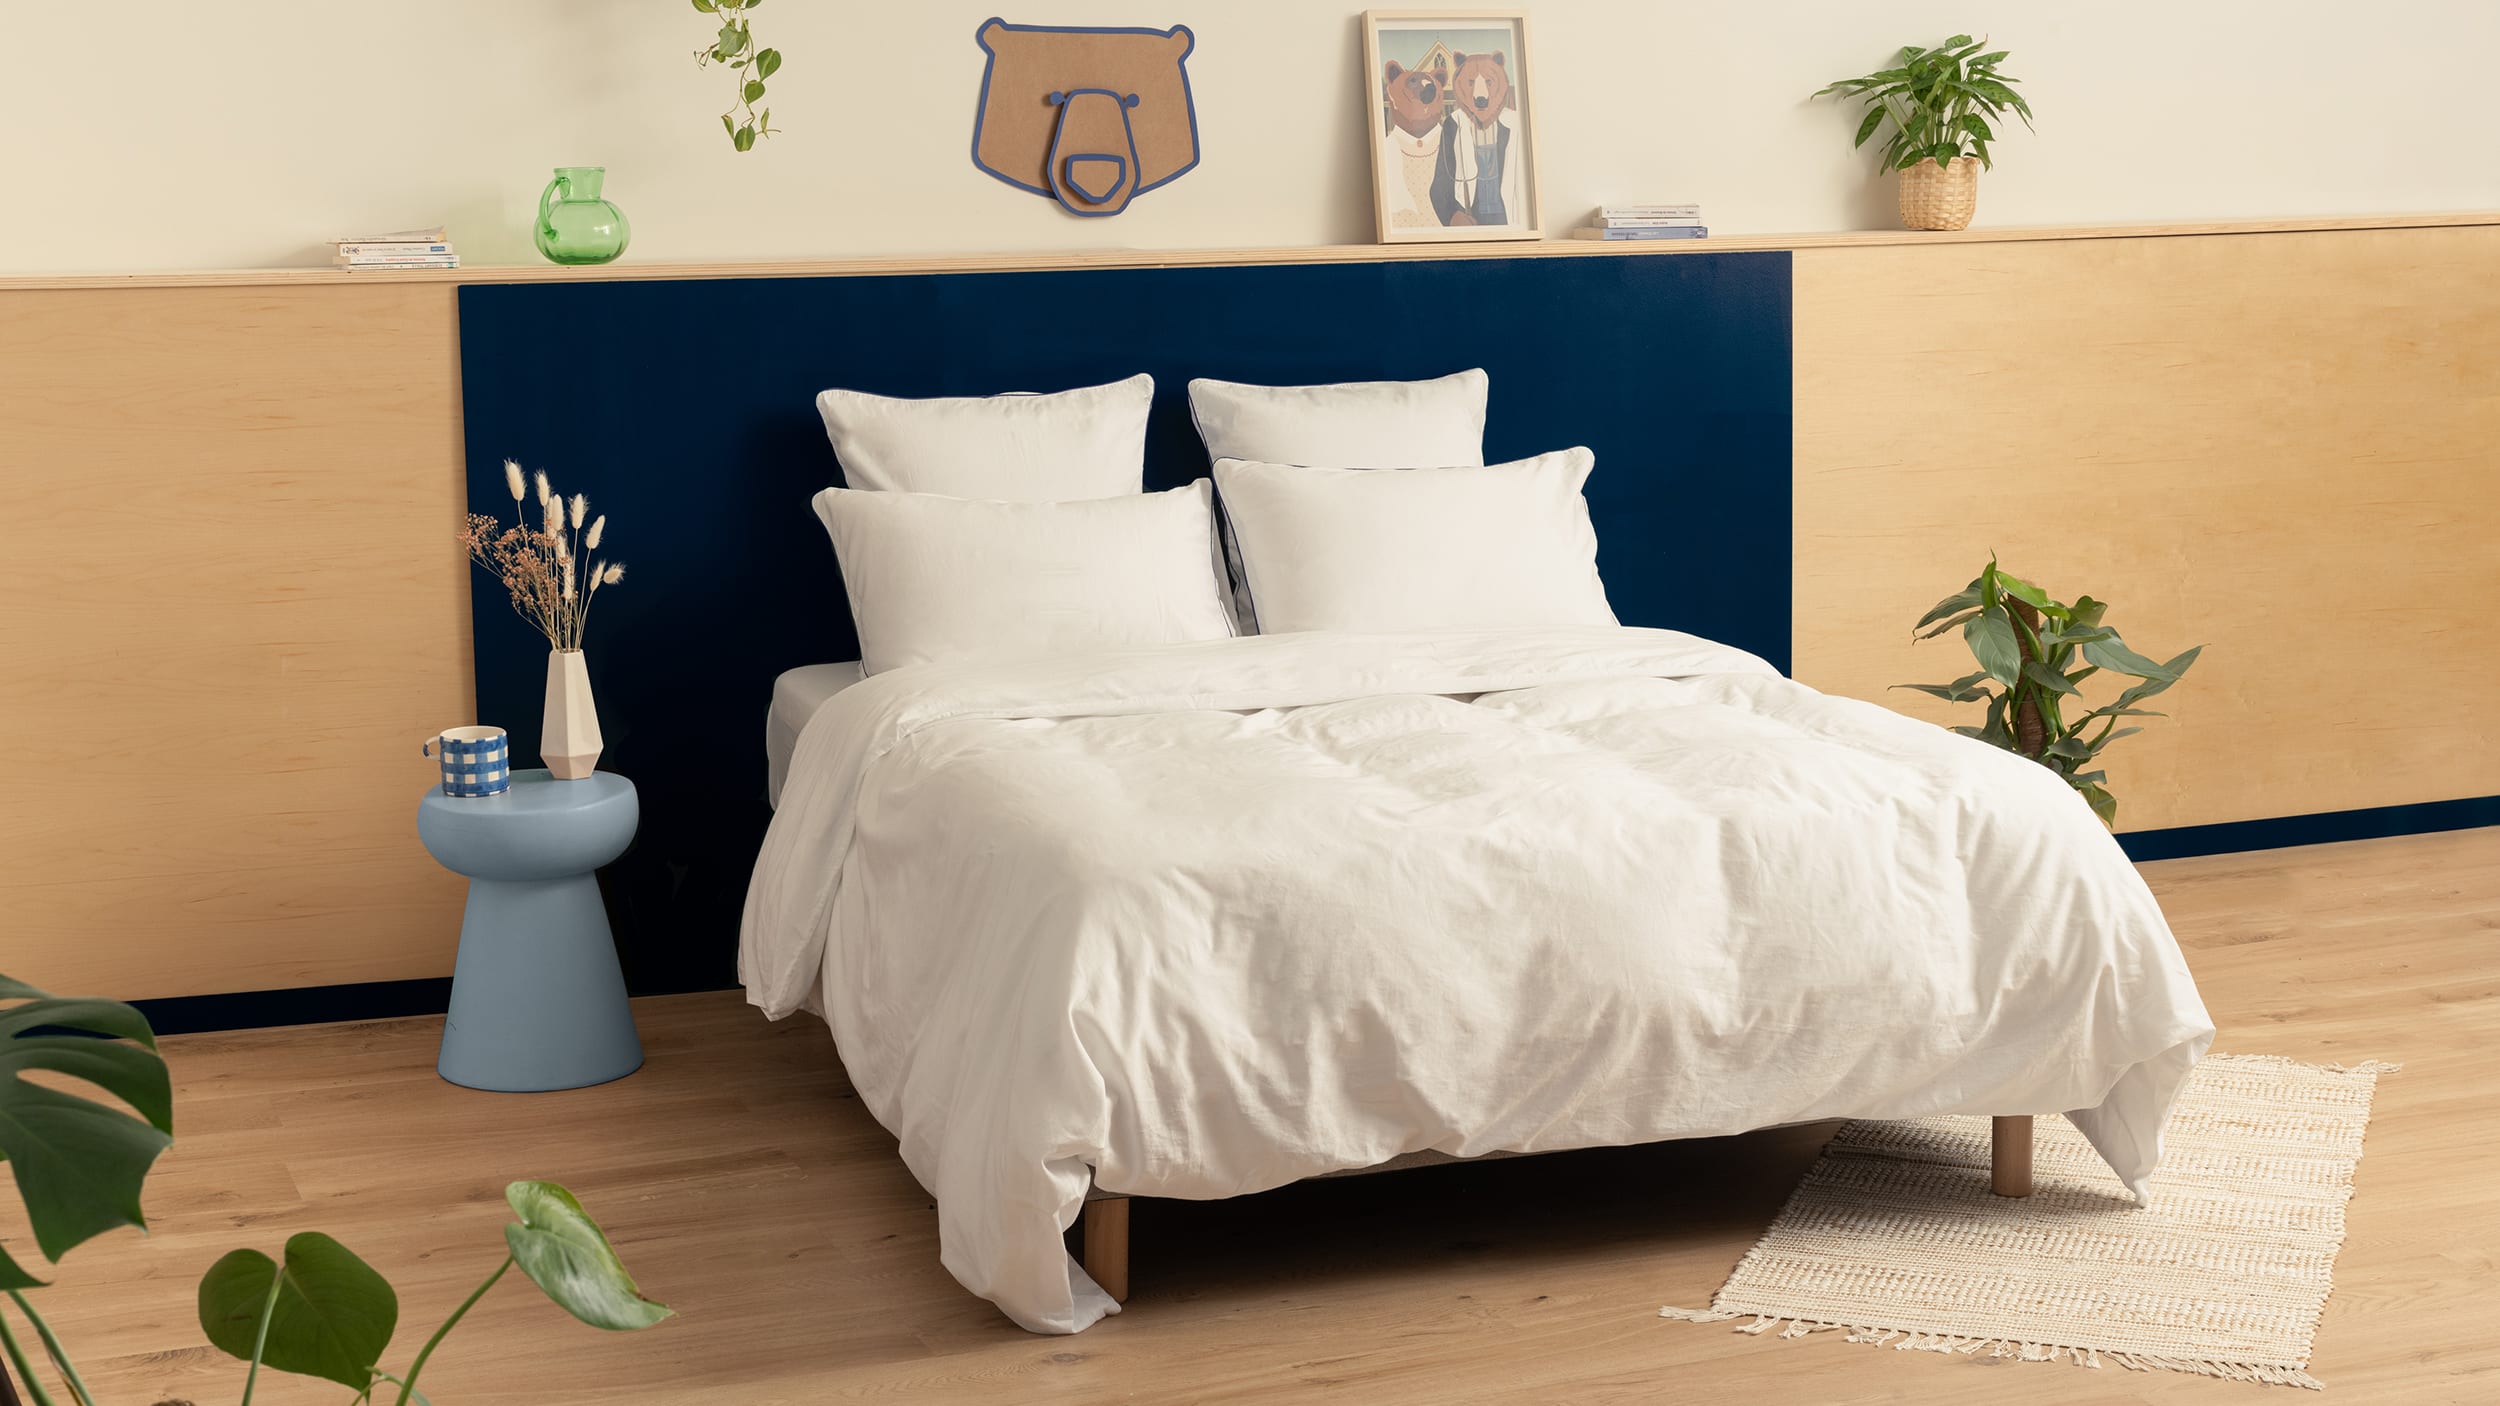 Draps plats ▷ Draps de lit colorés, de qualité et pas cher